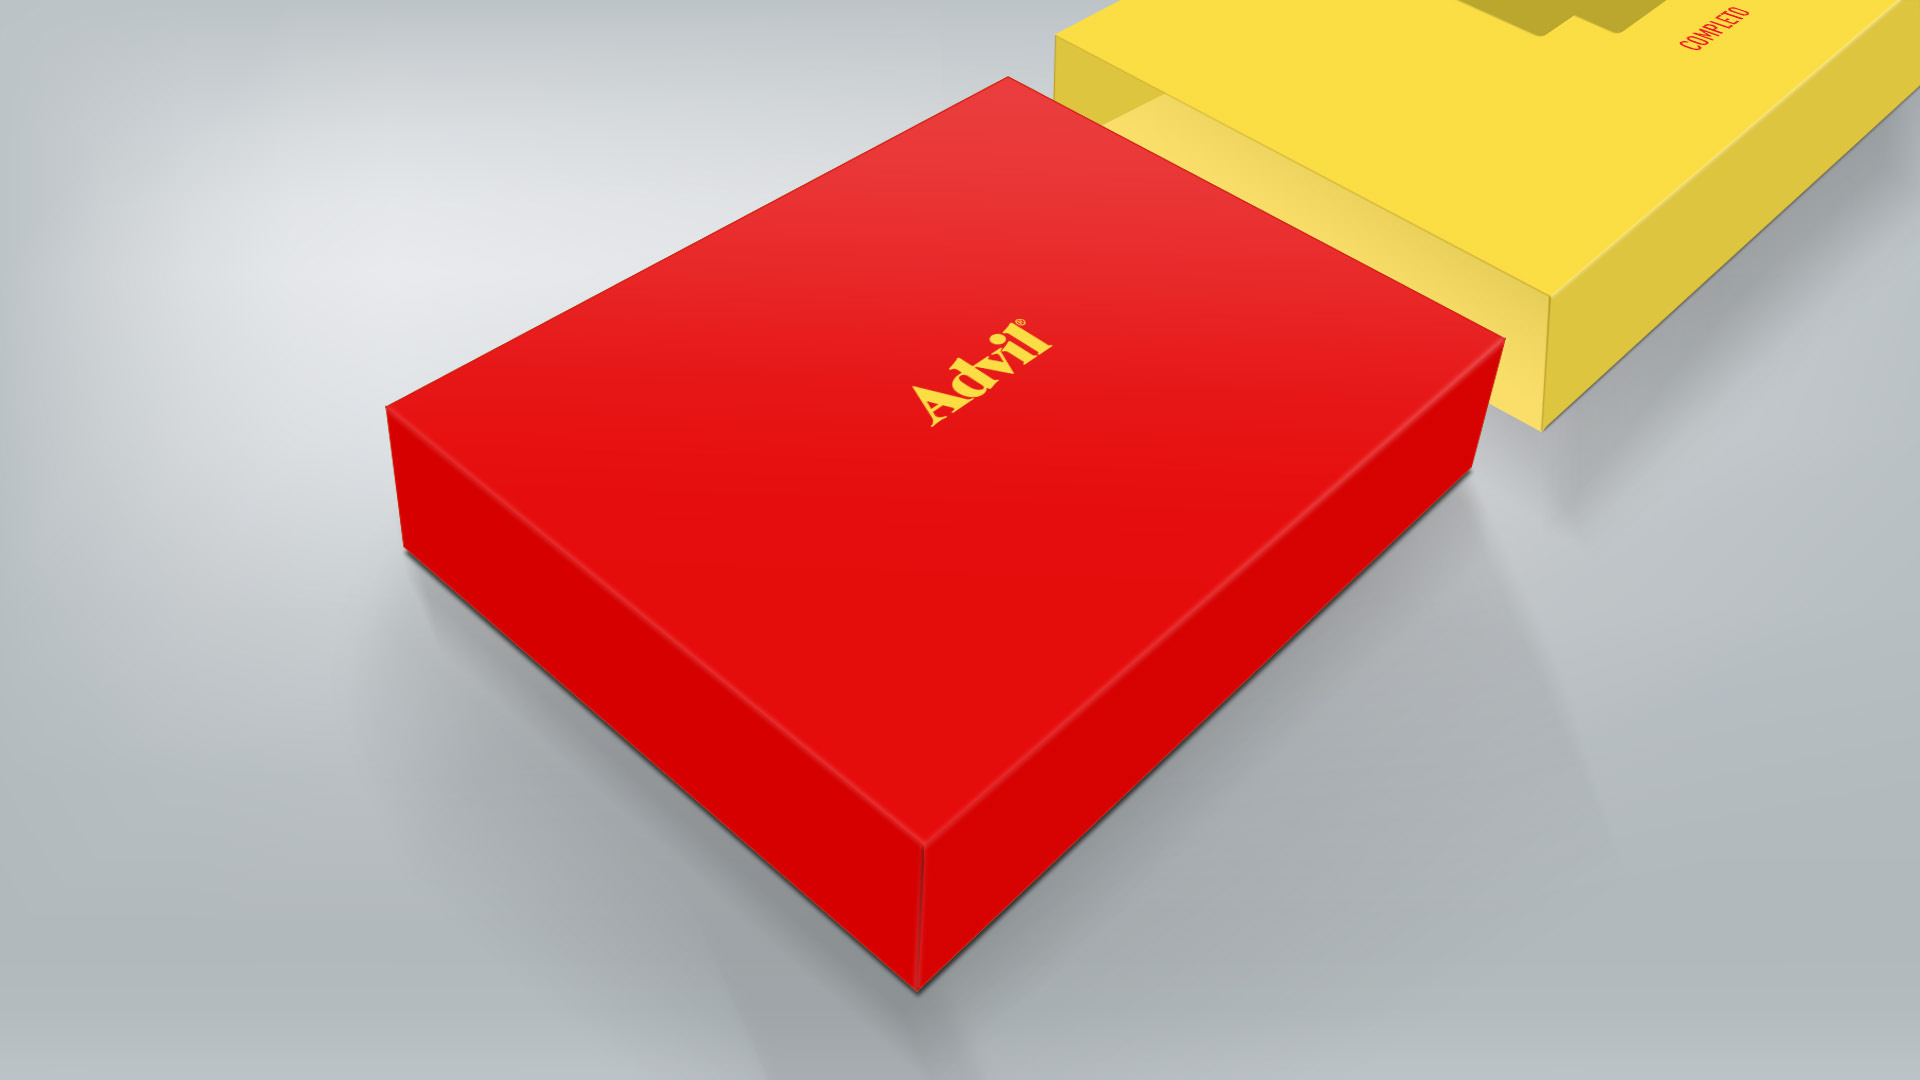 Imagem do case sales kit de lançamento do Advil Gel desenvolvida pelo Estúdio E | Agência de Comunicação para a GSK